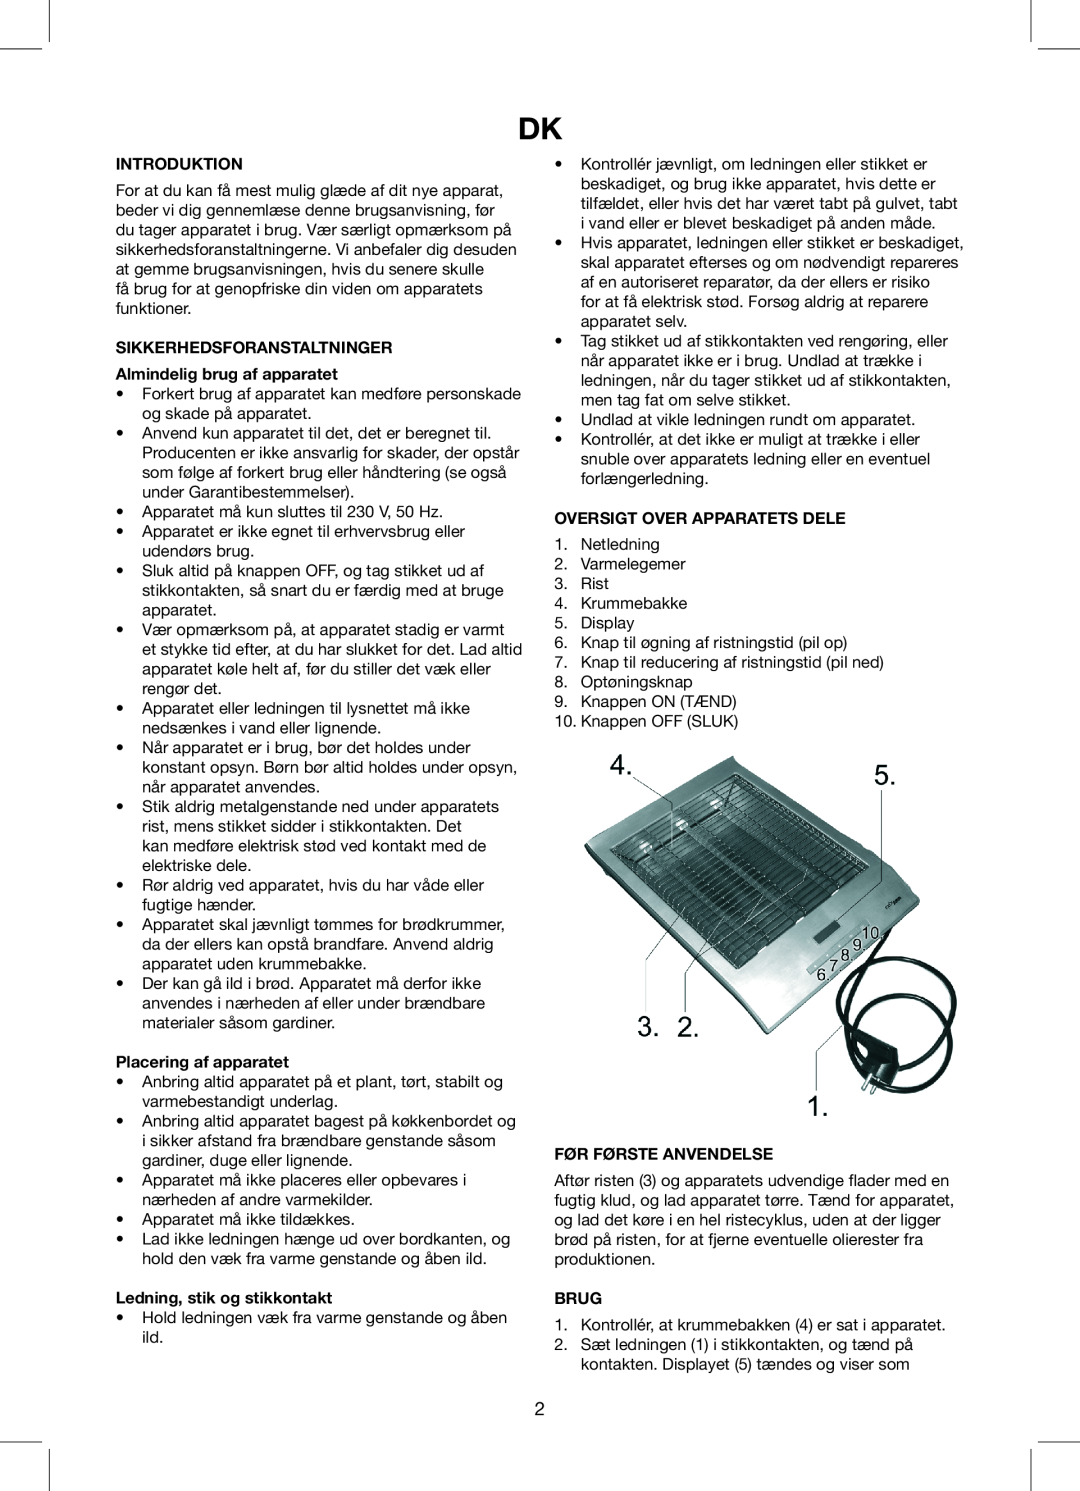 Melissa 243-046 manual Introduktion, SIKKERHEDSFORANSTALTNINGER Almindelig brug af apparatet, Placering af apparatet, Brug 